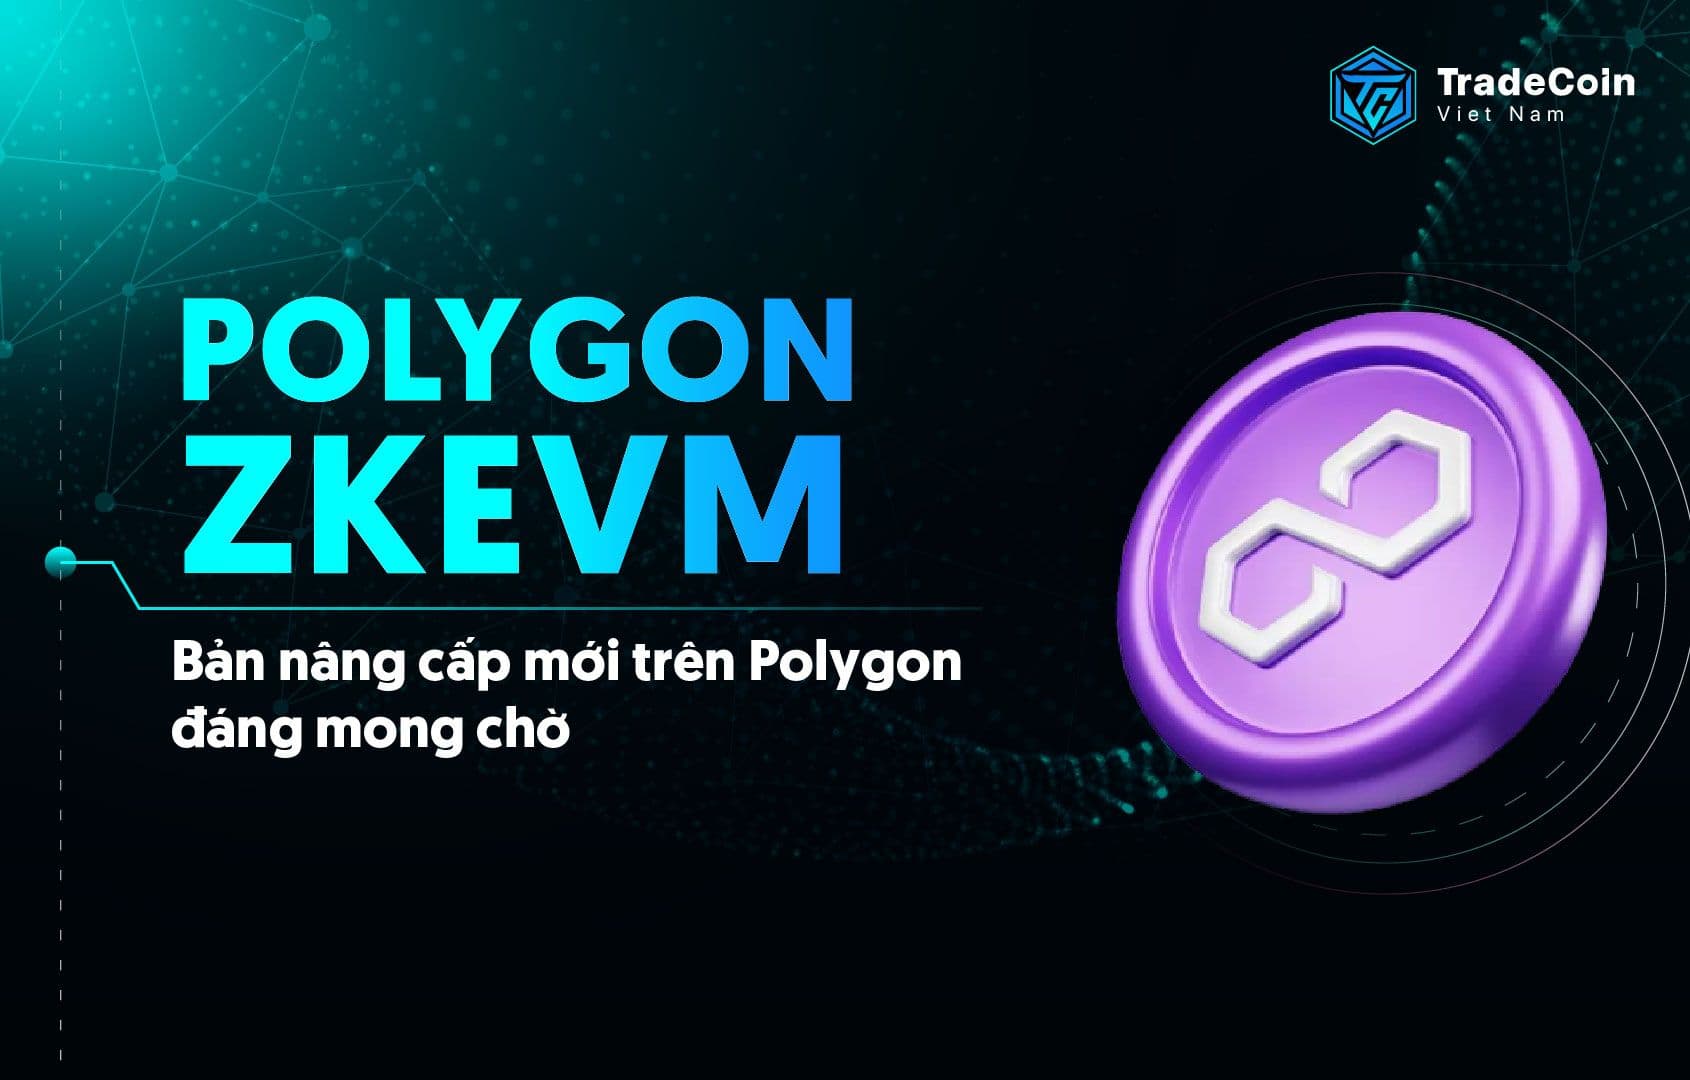 Polygon zkEVM là gì? Giải pháp mở rộng quy mô đáng chú ý từ Polygon